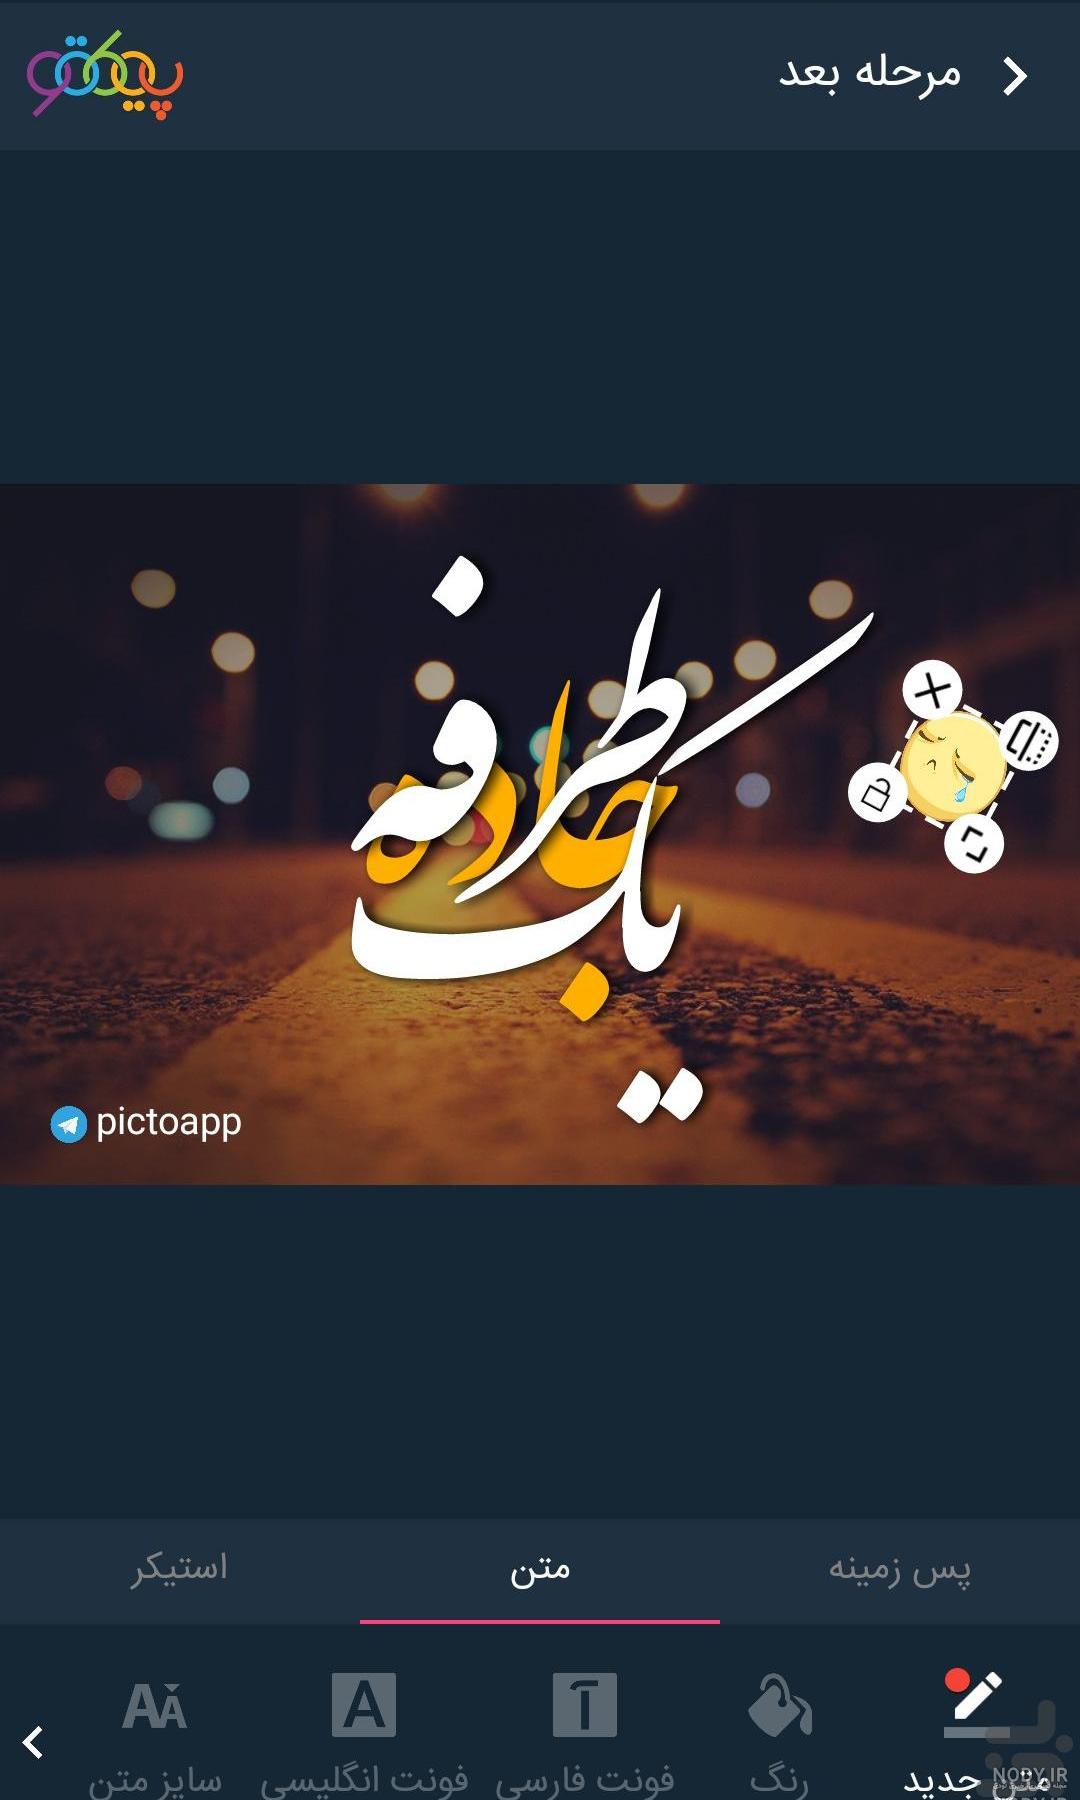 نرم افزار نوشتن فارسی روی عکس برای کامپیوتر